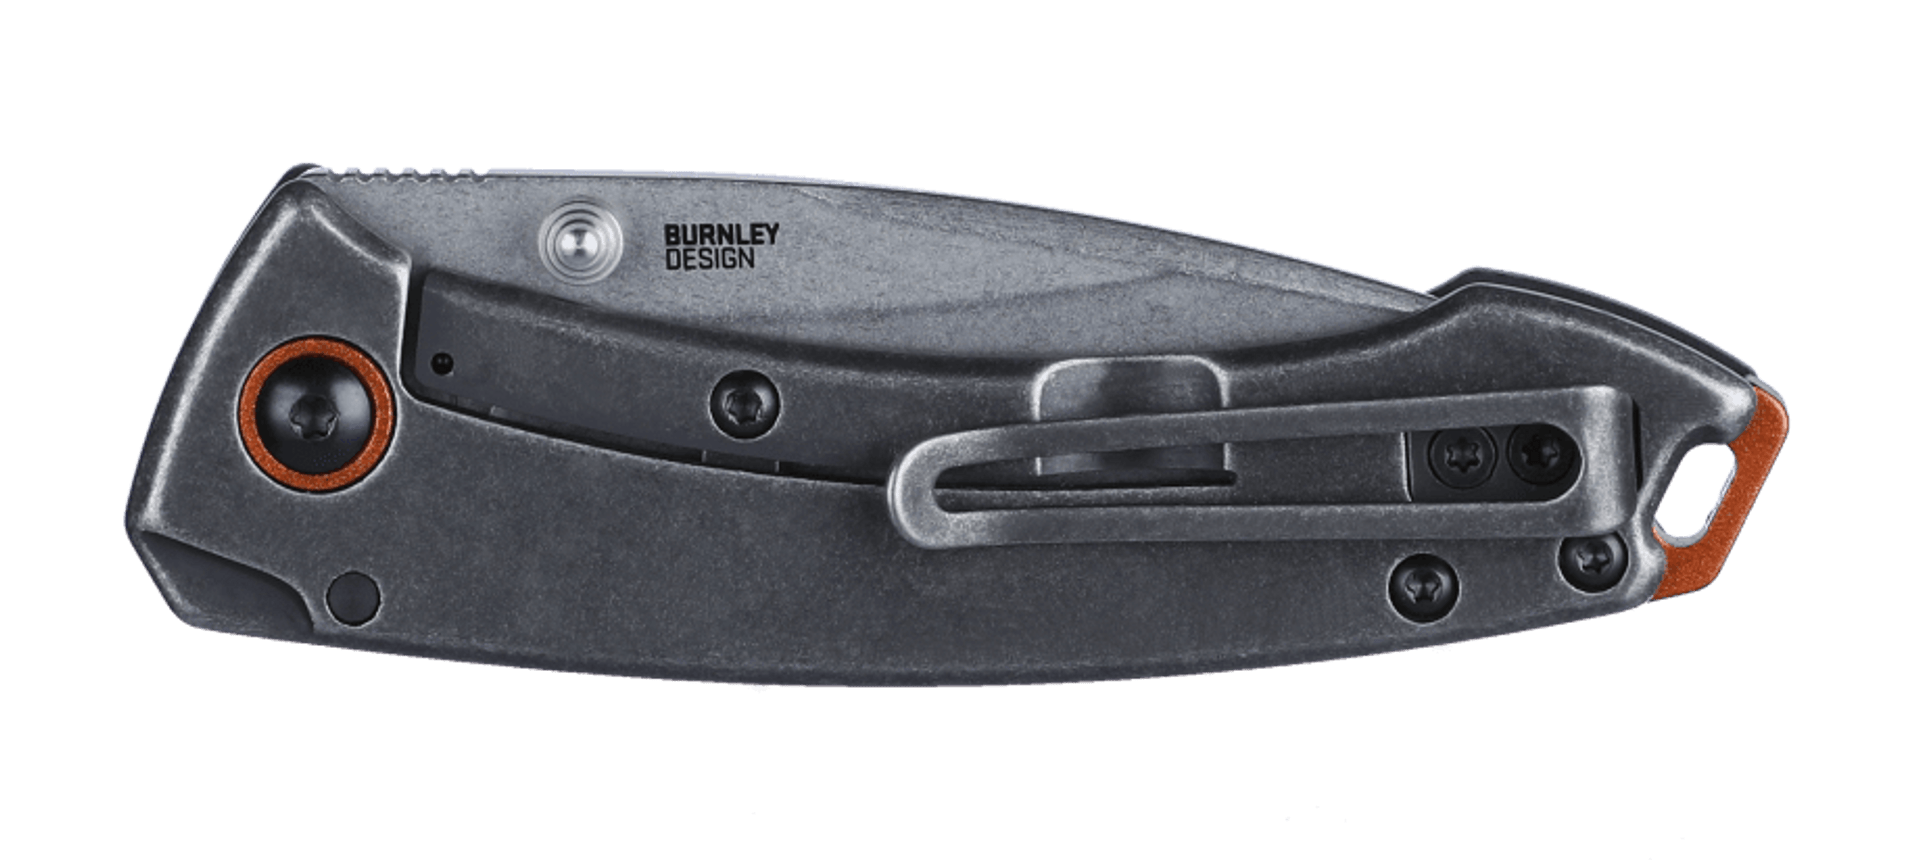 Tuna Compact pocket knife